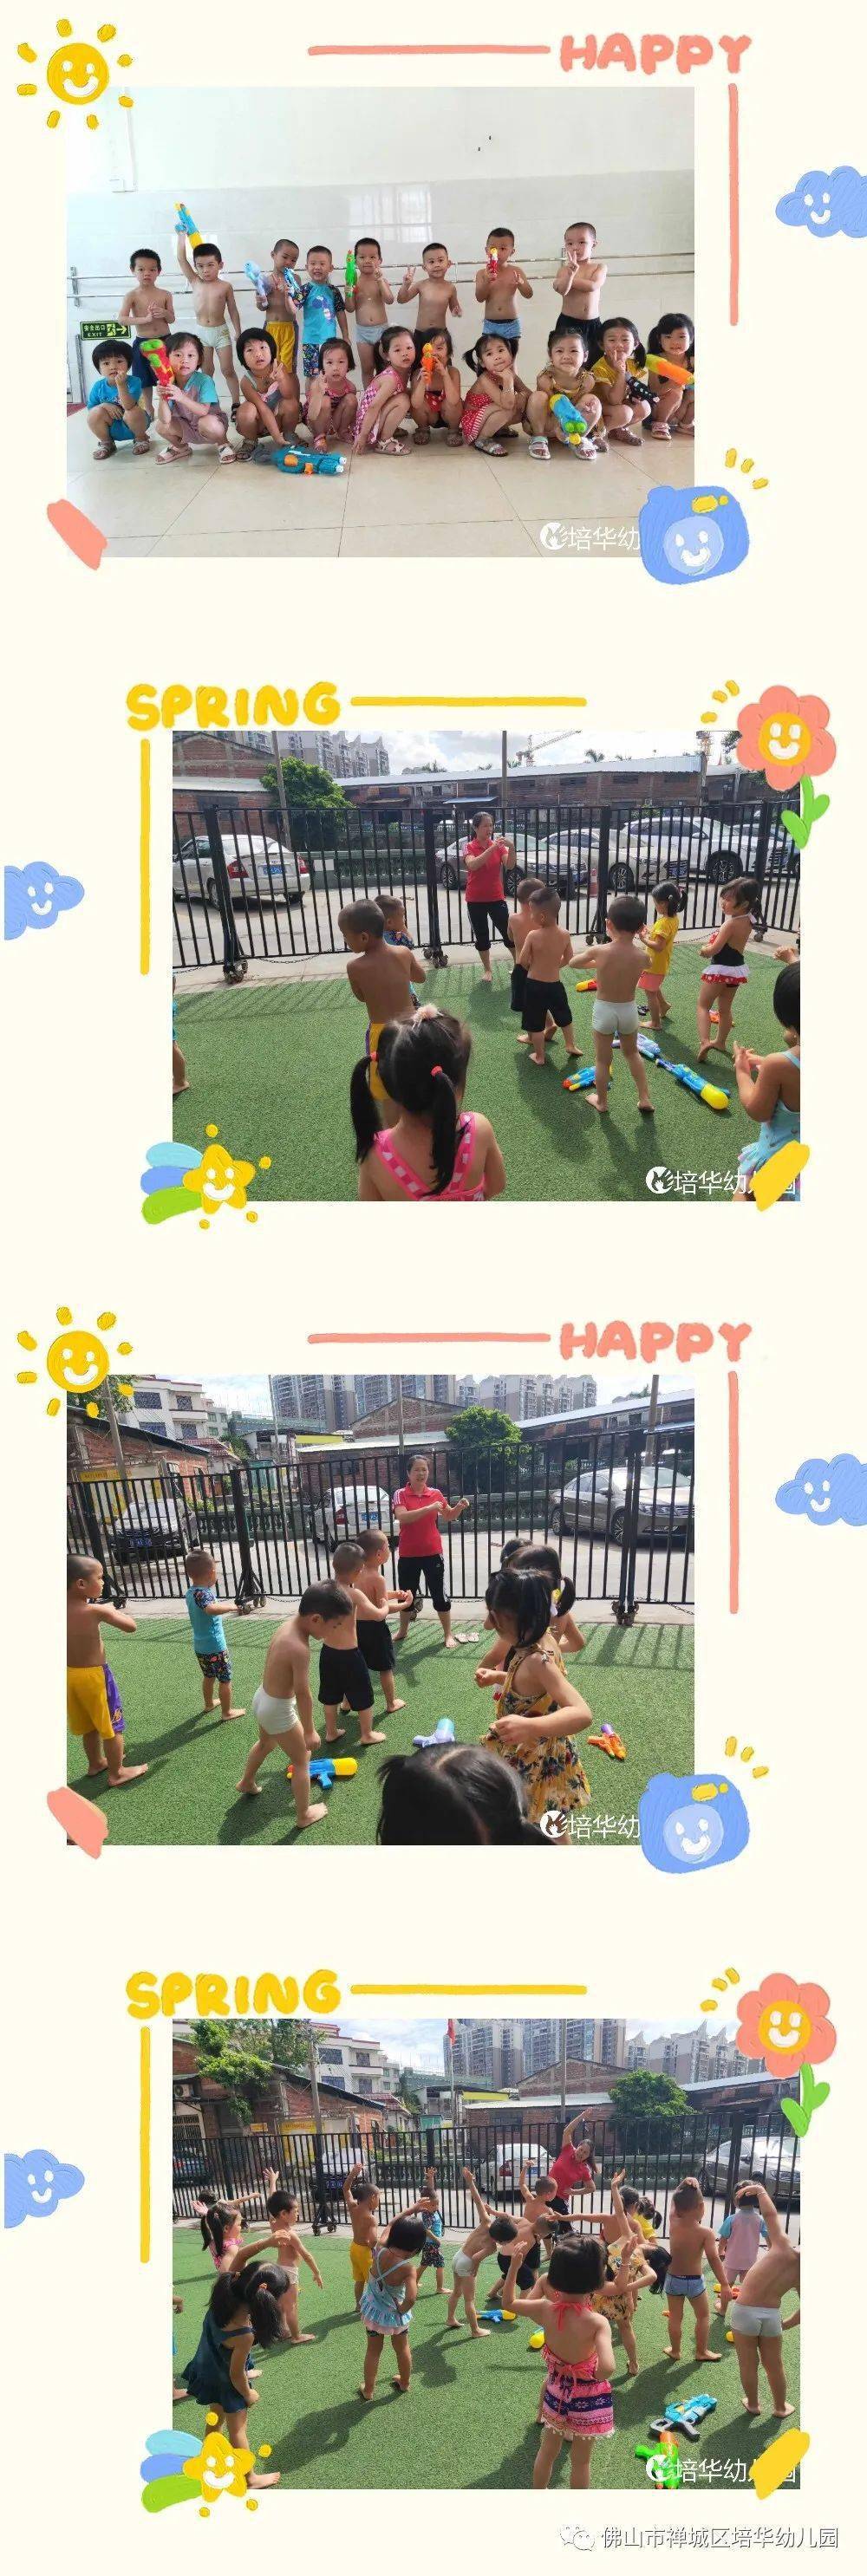 清凉一夏 疯狂一夏—培华幼儿园三浴锻炼活动_夏日的阳光